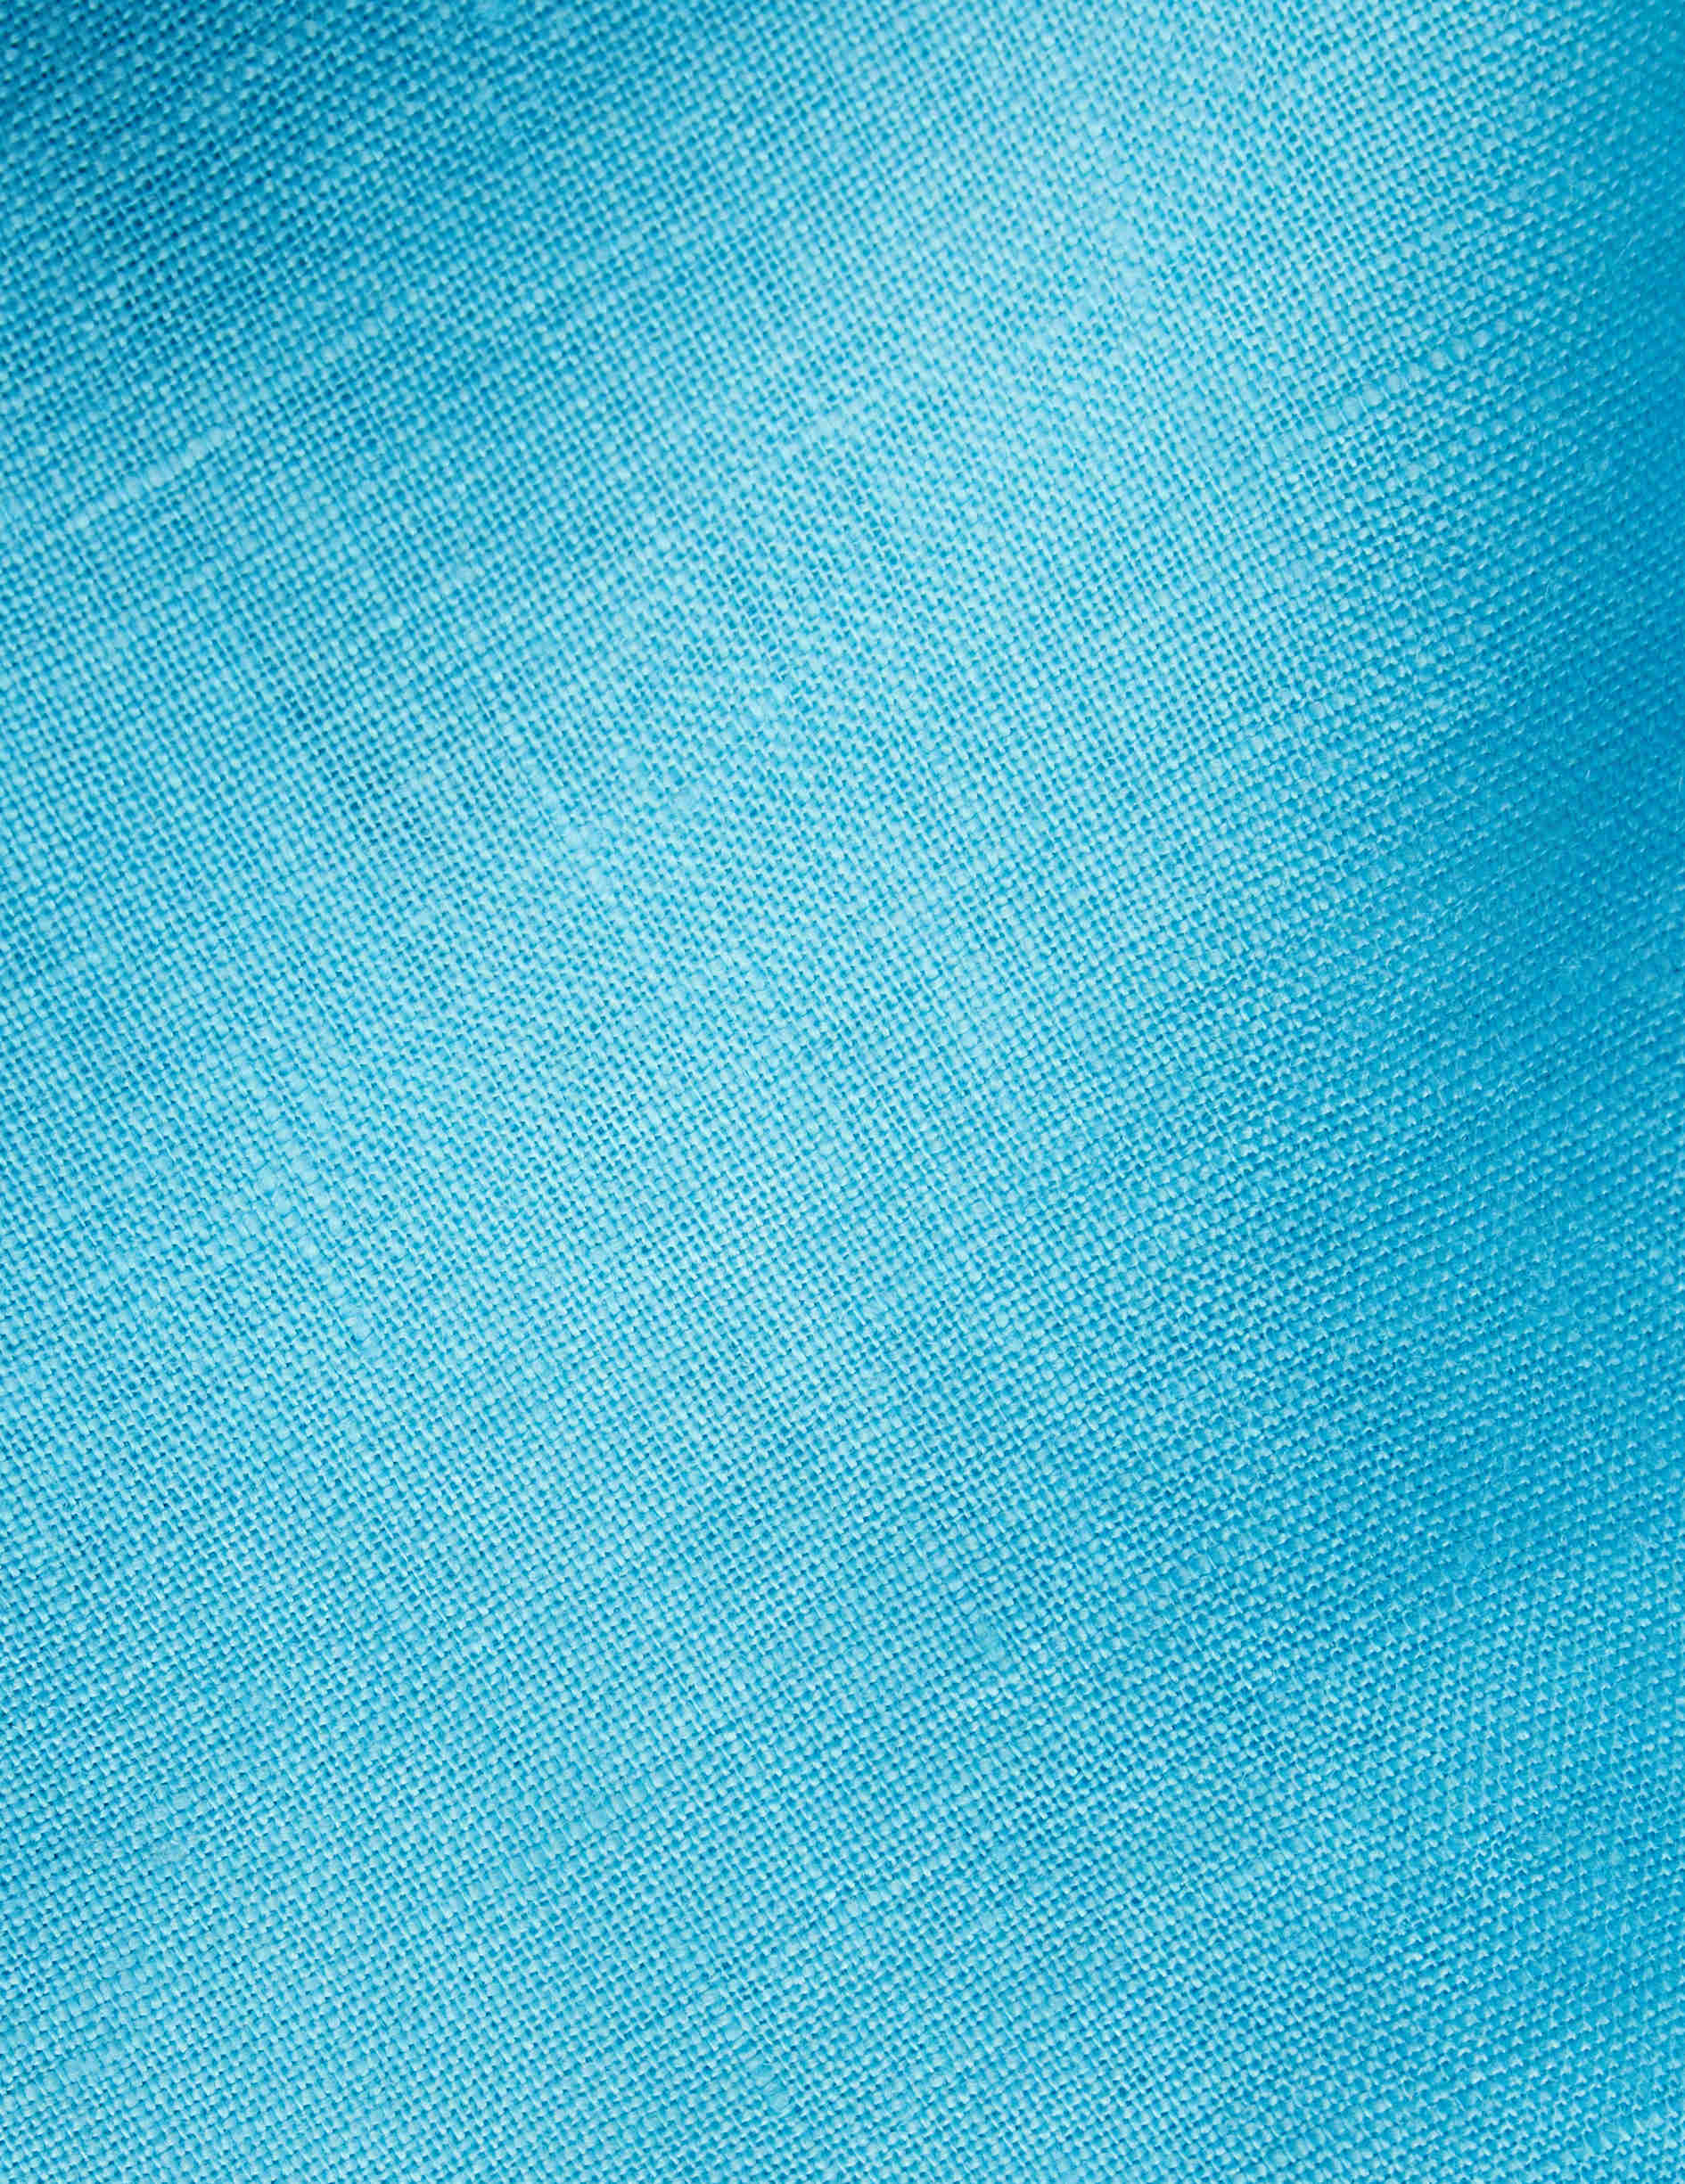 Aristote shirt in turquoise linen - Linen - Italian Collar